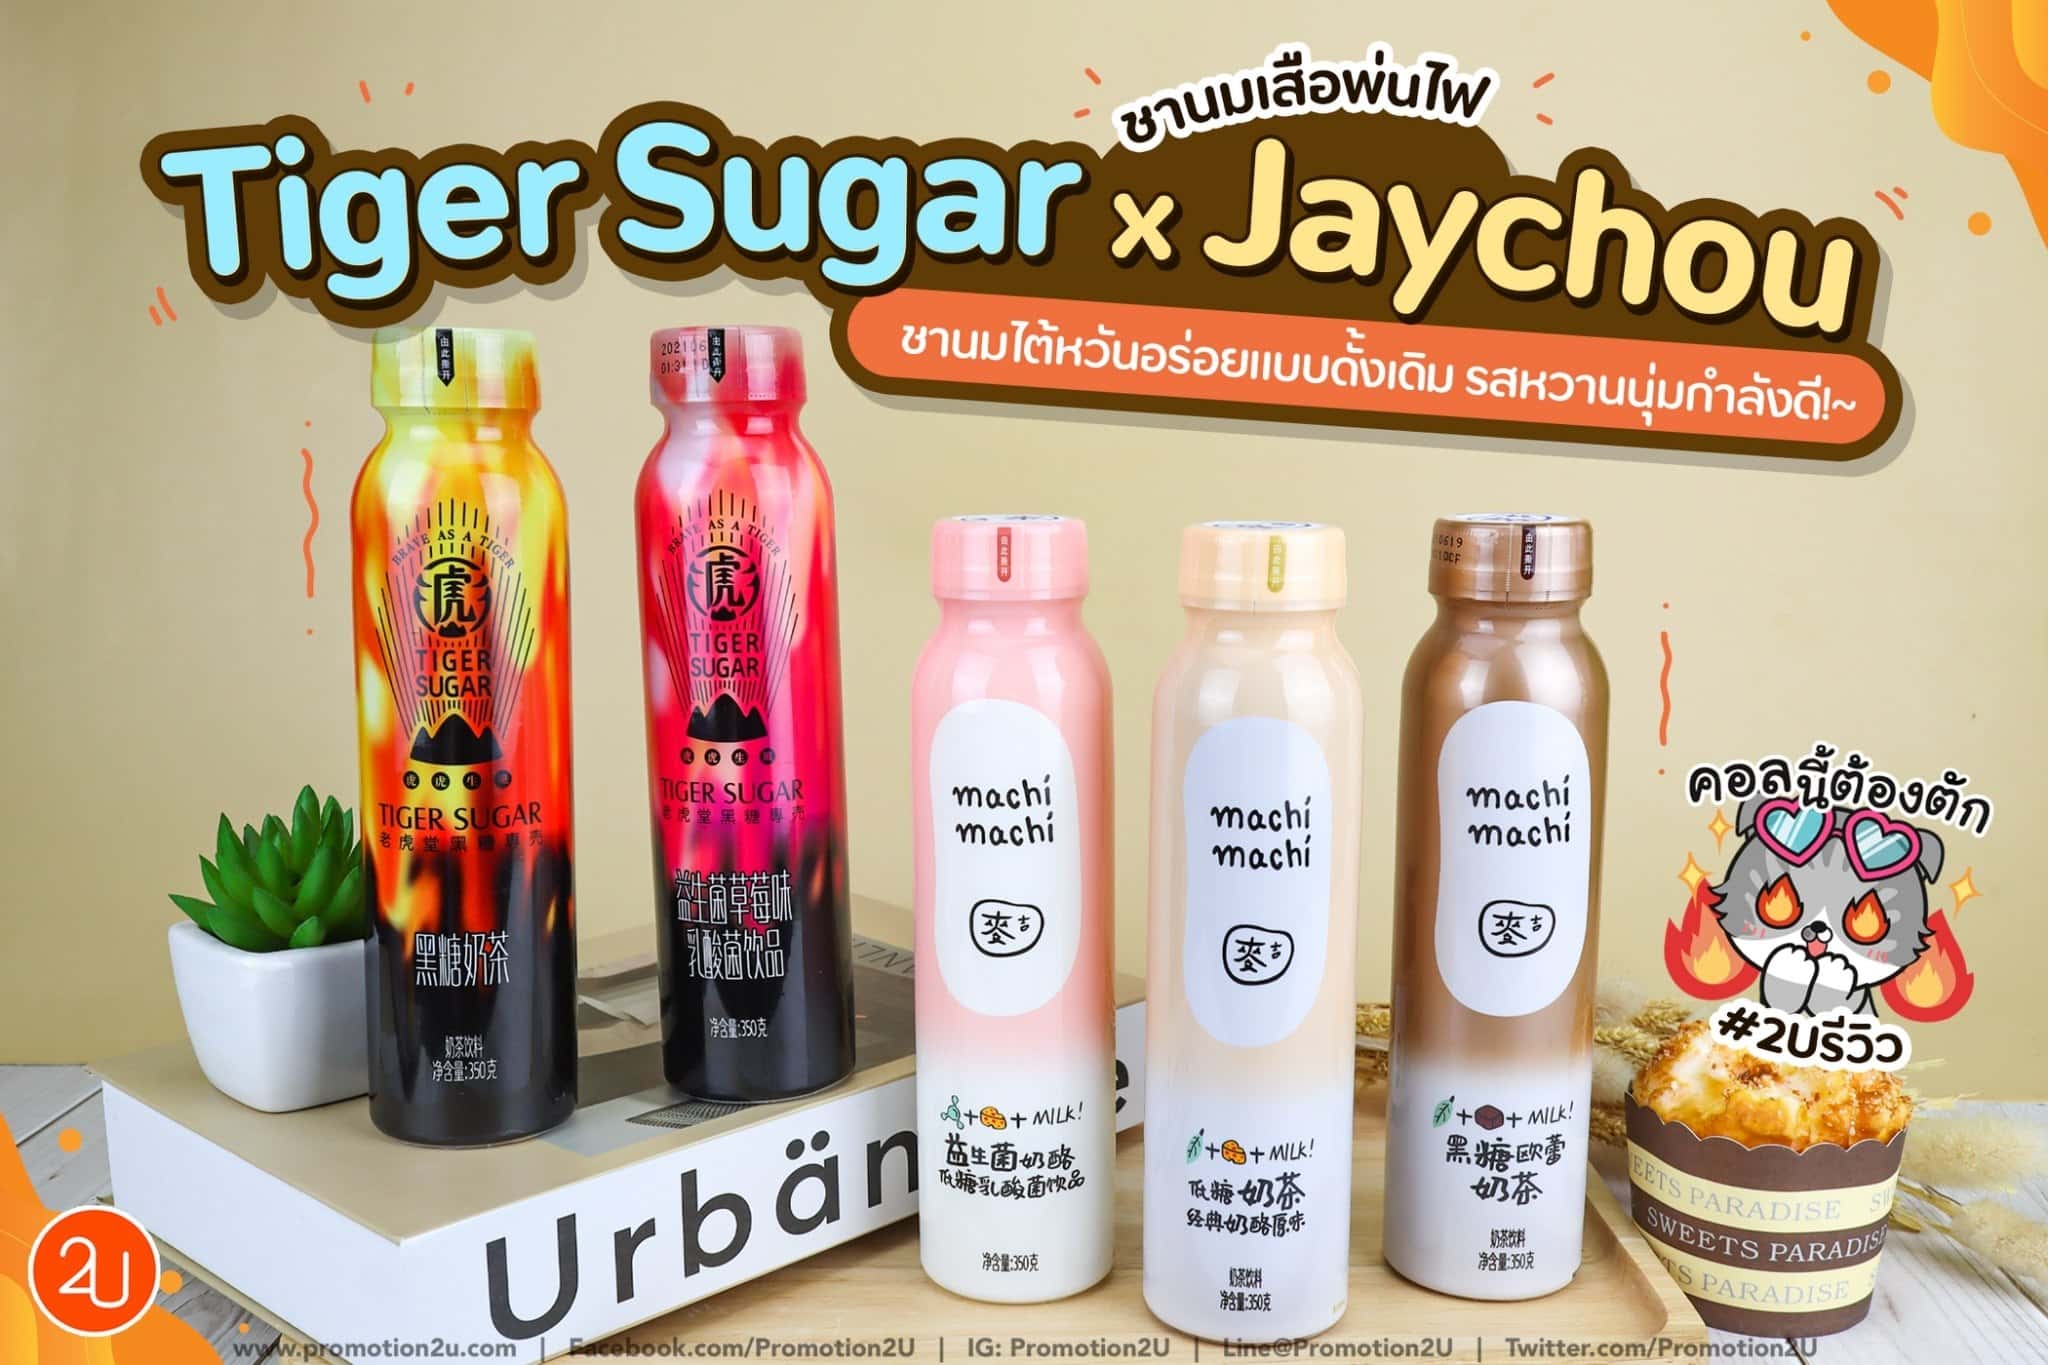 รีวิวชานมเสือพ่นไฟ Tiger sugar x Jay chou หอม อร่อย ต้องลอง!~